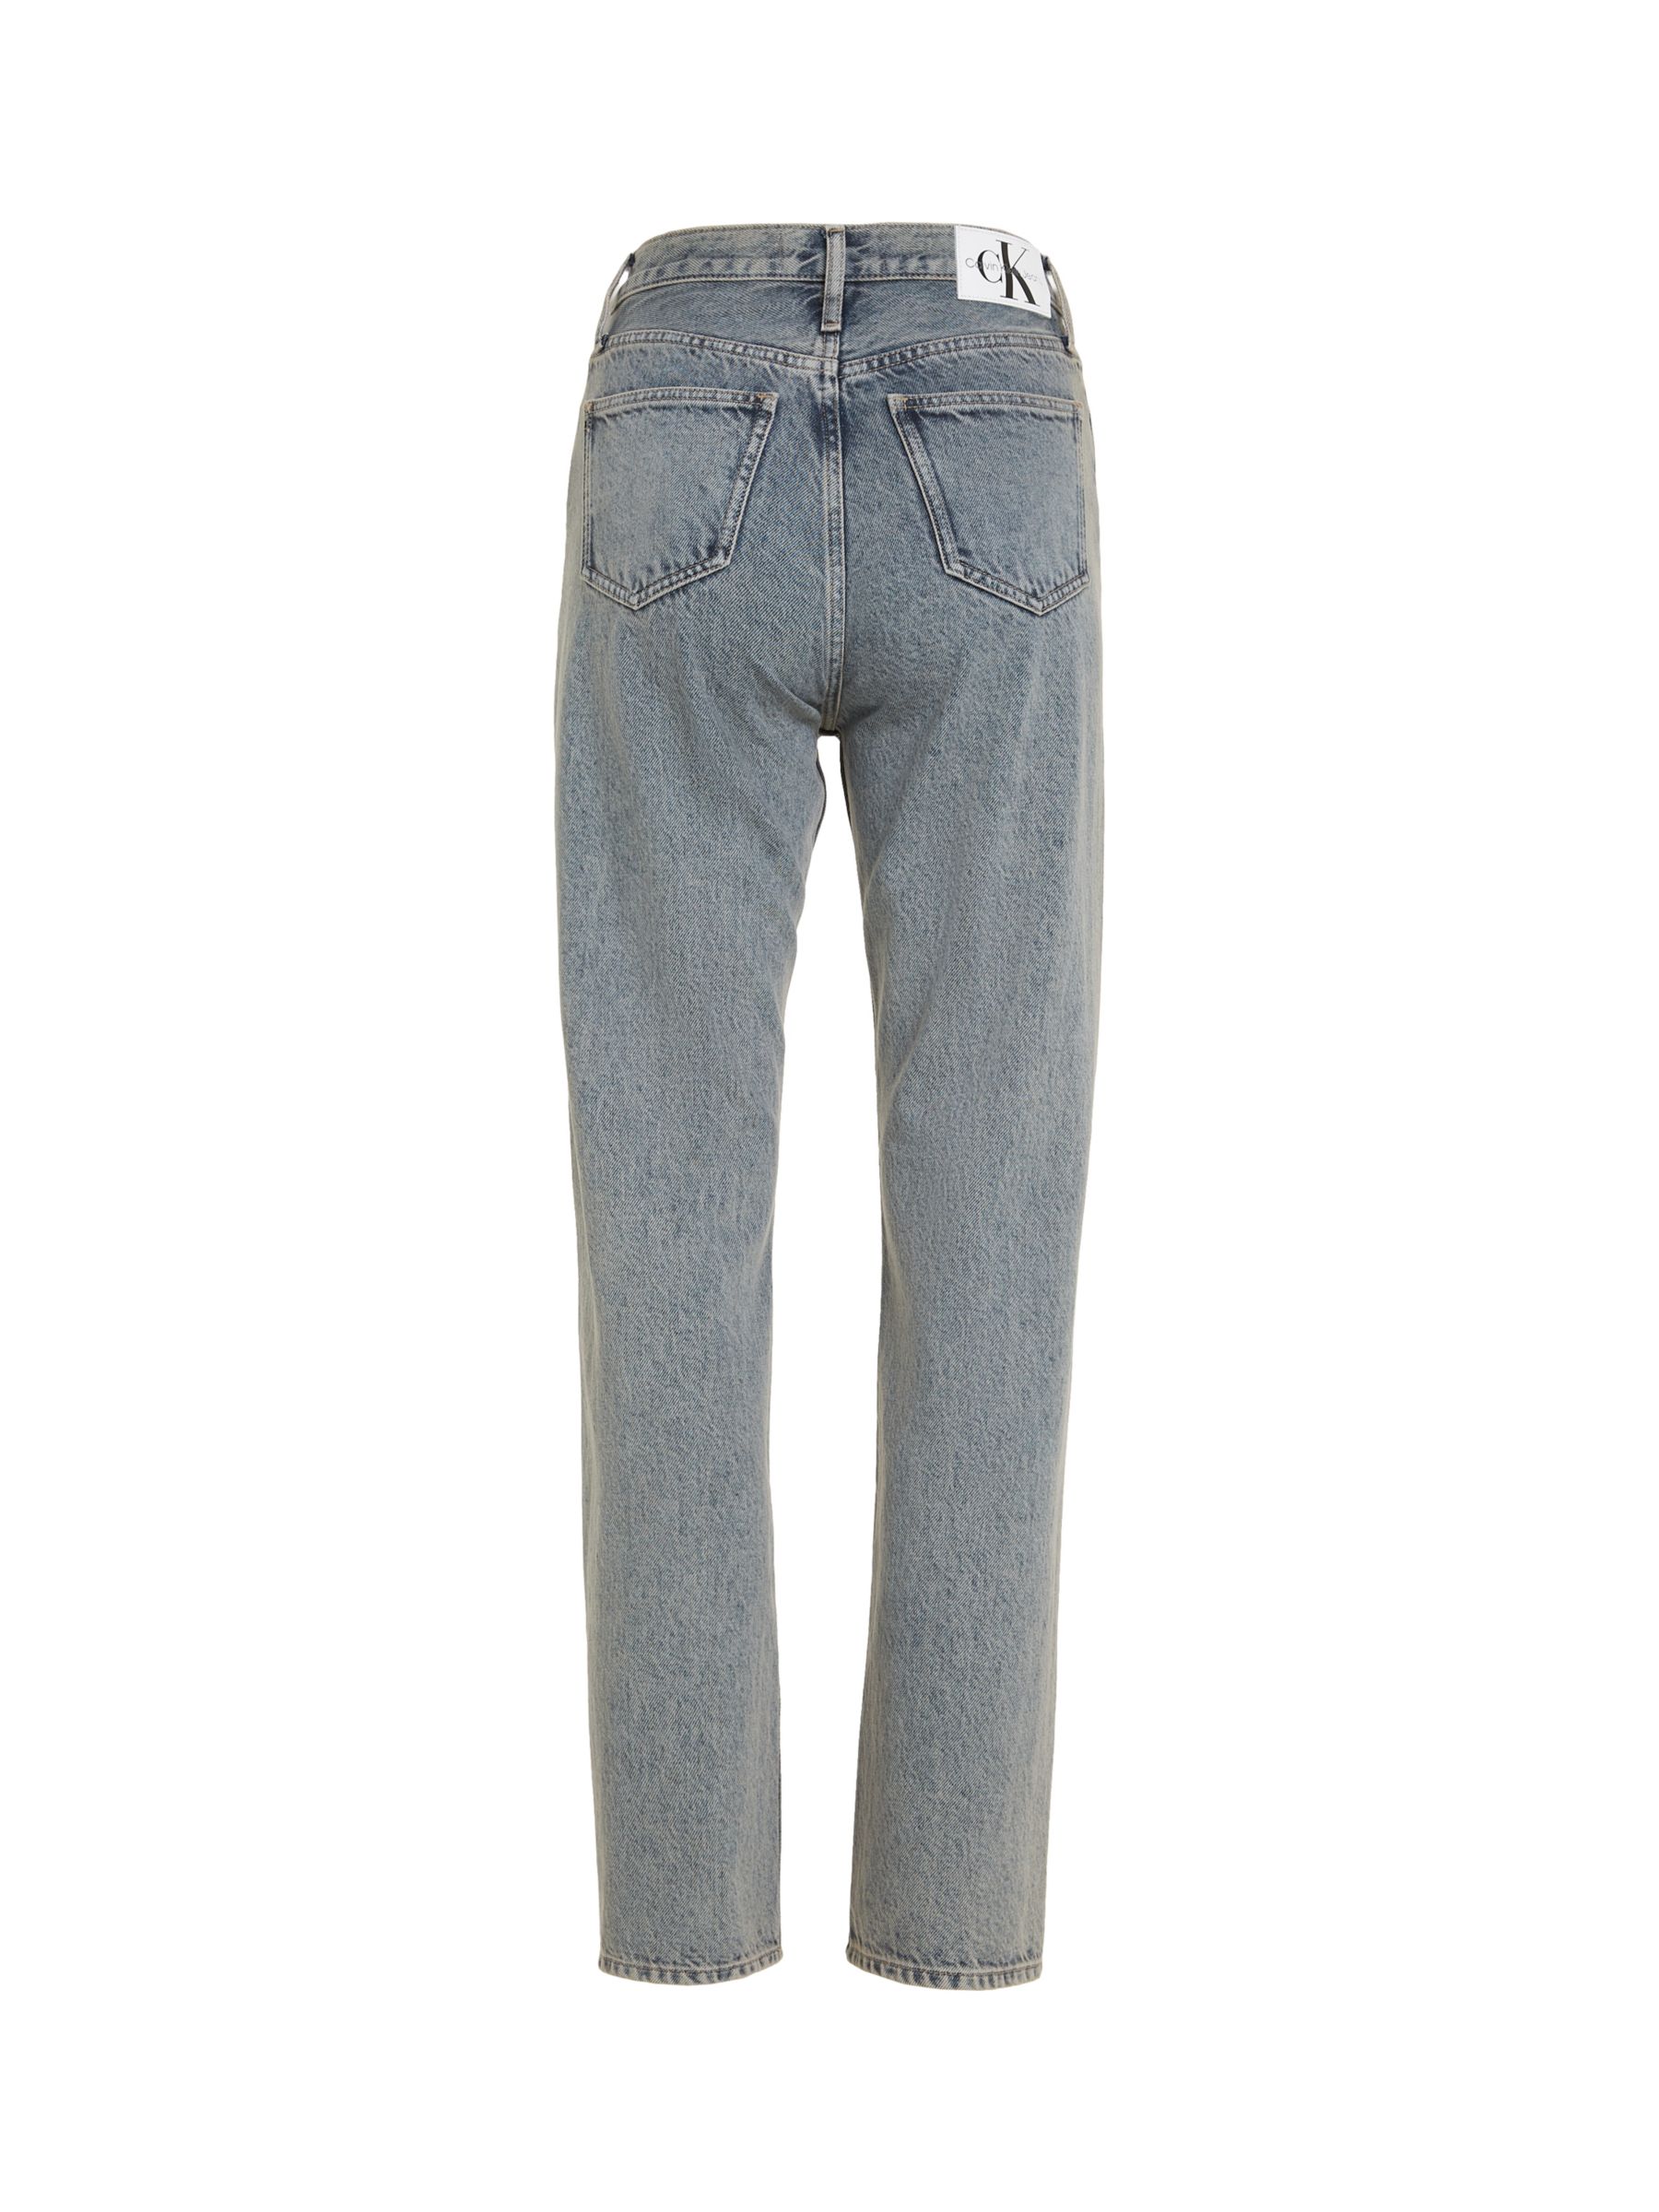 Calvin Klein High Rise Straight Cut Jeans, Grey, 27R